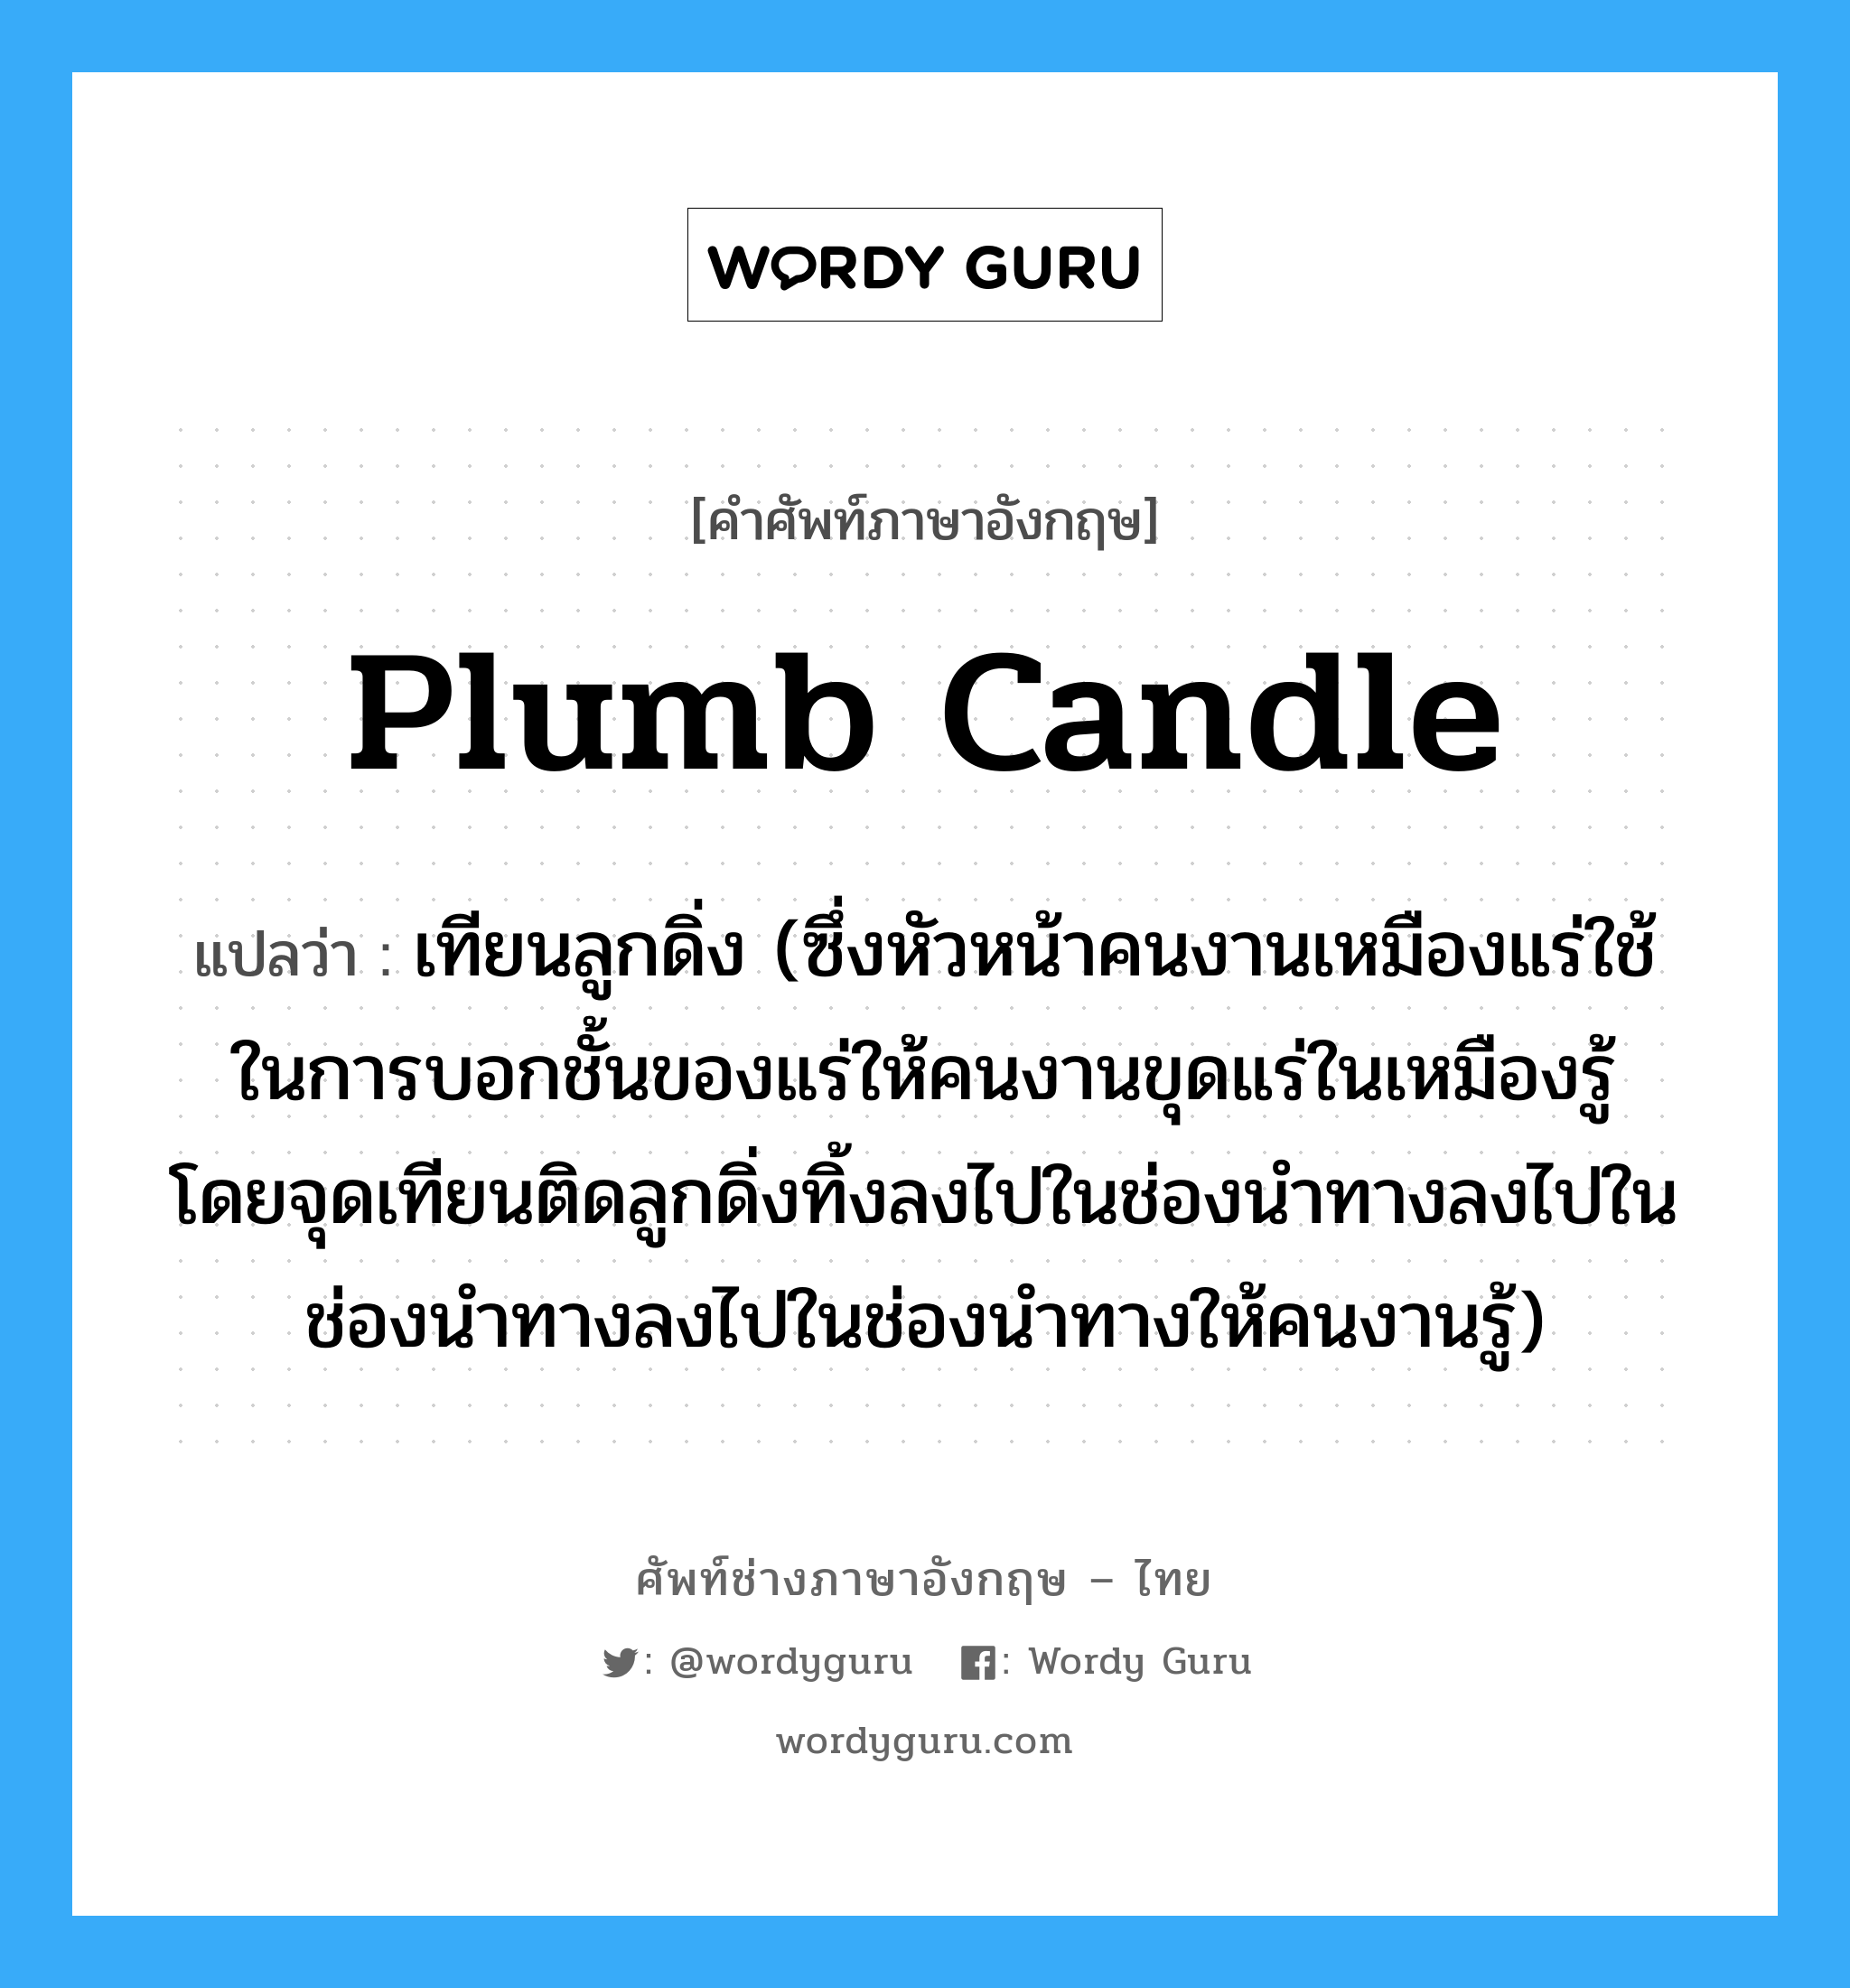 plumb candle แปลว่า?, คำศัพท์ช่างภาษาอังกฤษ - ไทย plumb candle คำศัพท์ภาษาอังกฤษ plumb candle แปลว่า เทียนลูกดิ่ง (ซึ่งหัวหน้าคนงานเหมืองแร่ใช้ในการบอกชั้นของแร่ให้คนงานขุดแร่ในเหมืองรู้ โดยจุดเทียนติดลูกดิ่งทิ้งลงไปในช่องนำทางลงไปในช่องนำทางลงไปในช่องนำทางให้คนงานรู้)